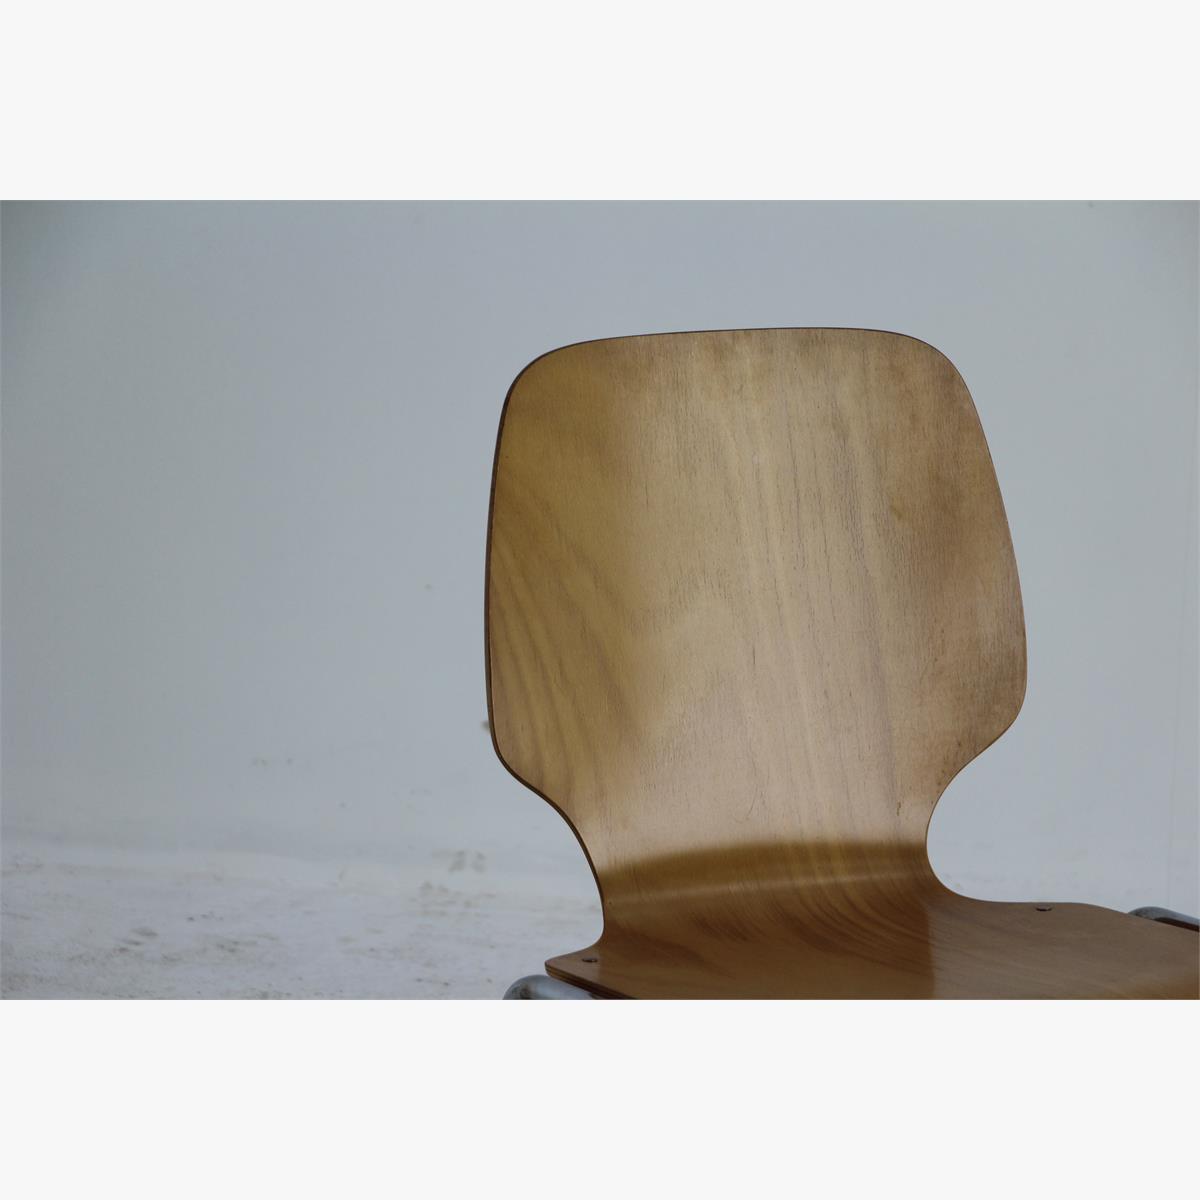 Afbeeldingen van retro stoel beuken zitting. Chrome poten 50 stuks beschikbaar